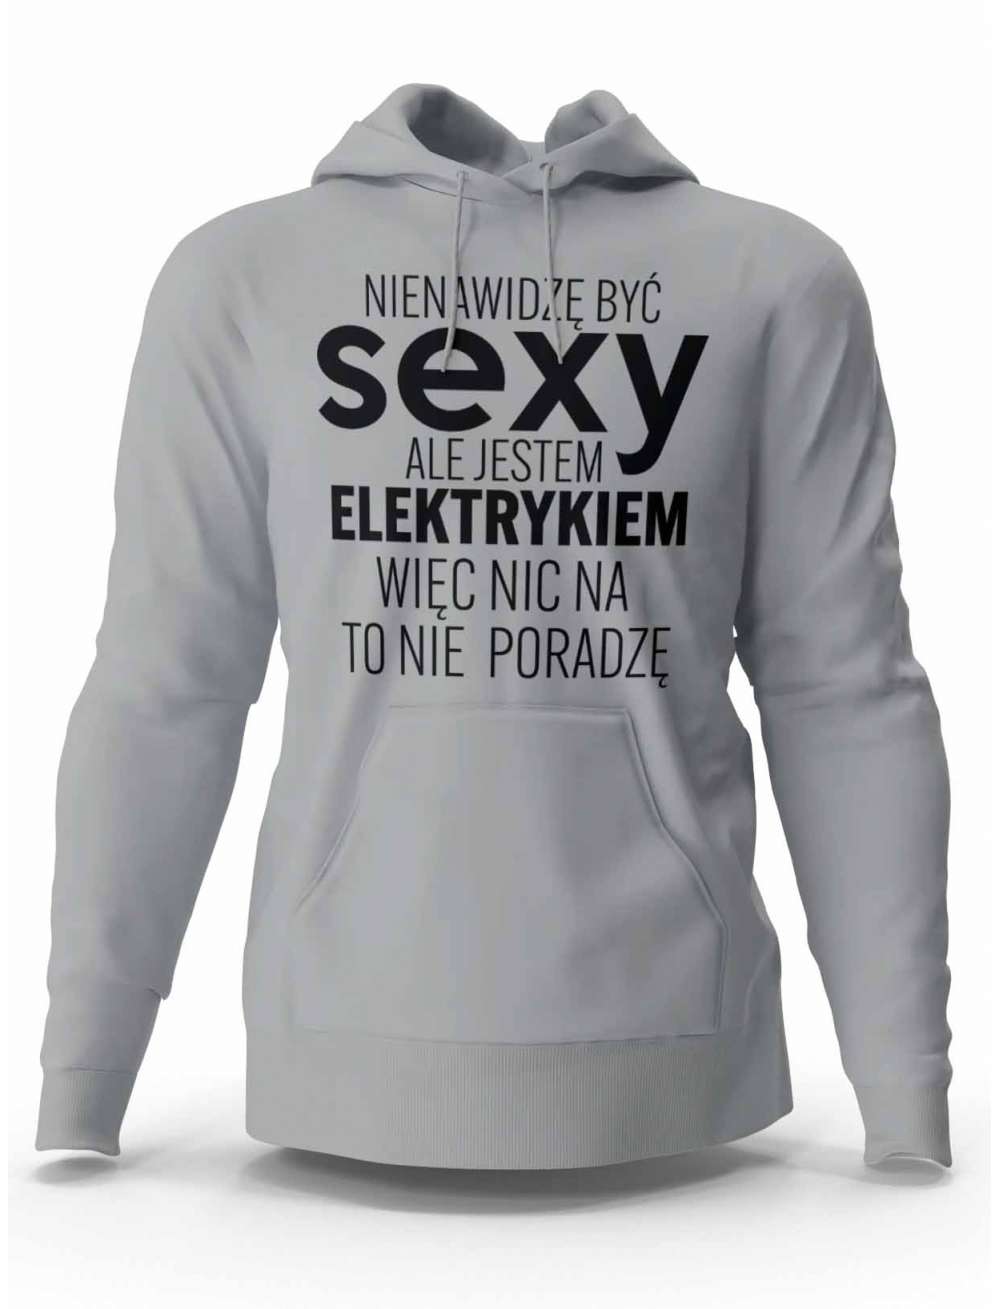 Bluza Męska, Sexy Elektryk, Prezent Dla Mężczyzny